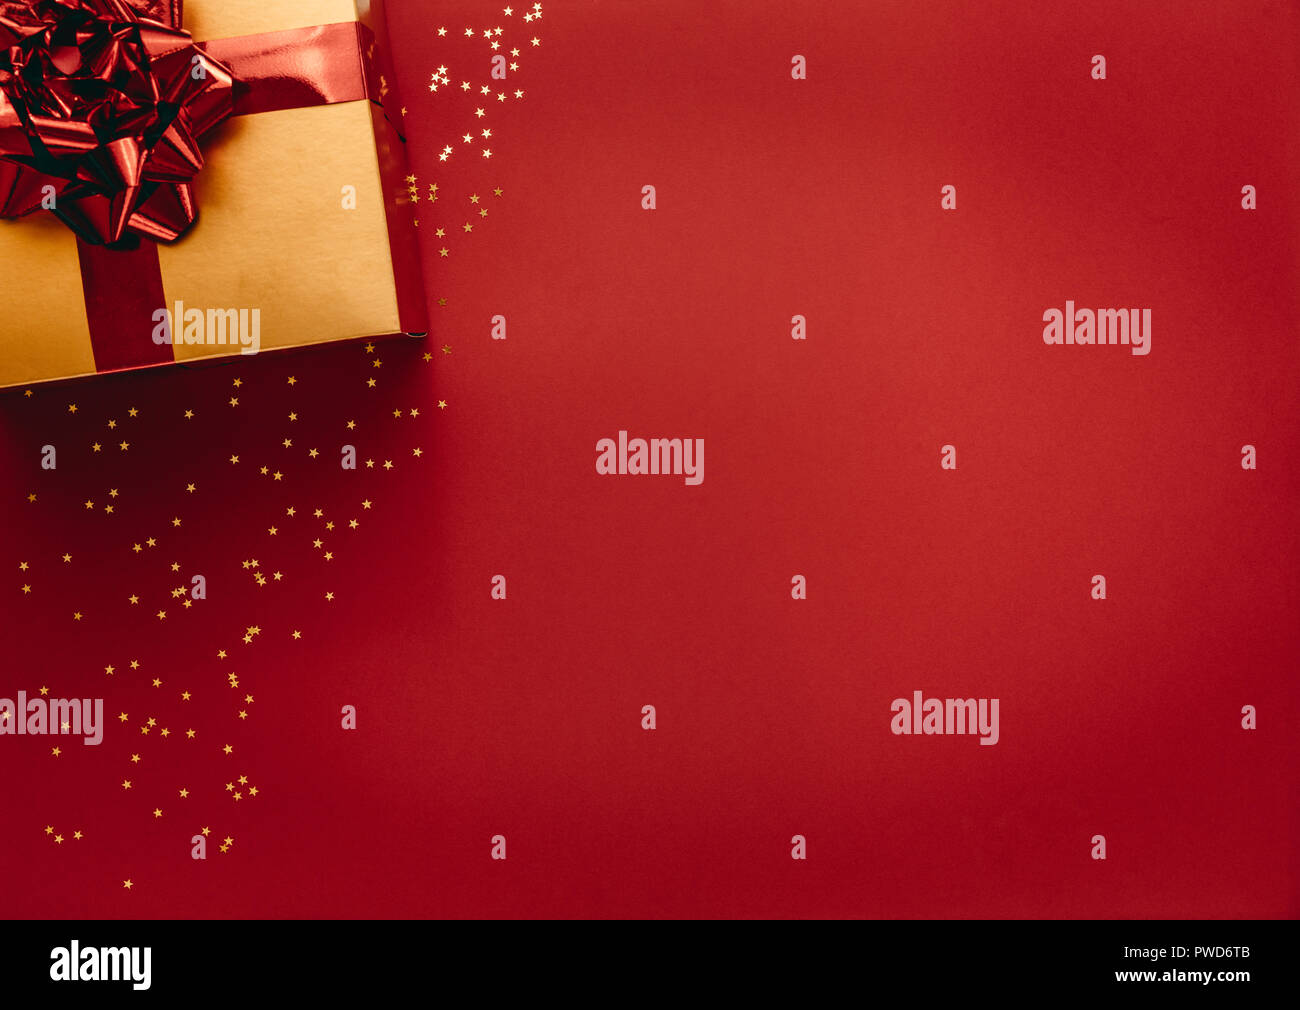 Boîte cadeau dorée avec des étoiles sur fond rouge. Vue de dessus de cadeau de Noël avec étoiles jeter sur fond rouge. Banque D'Images